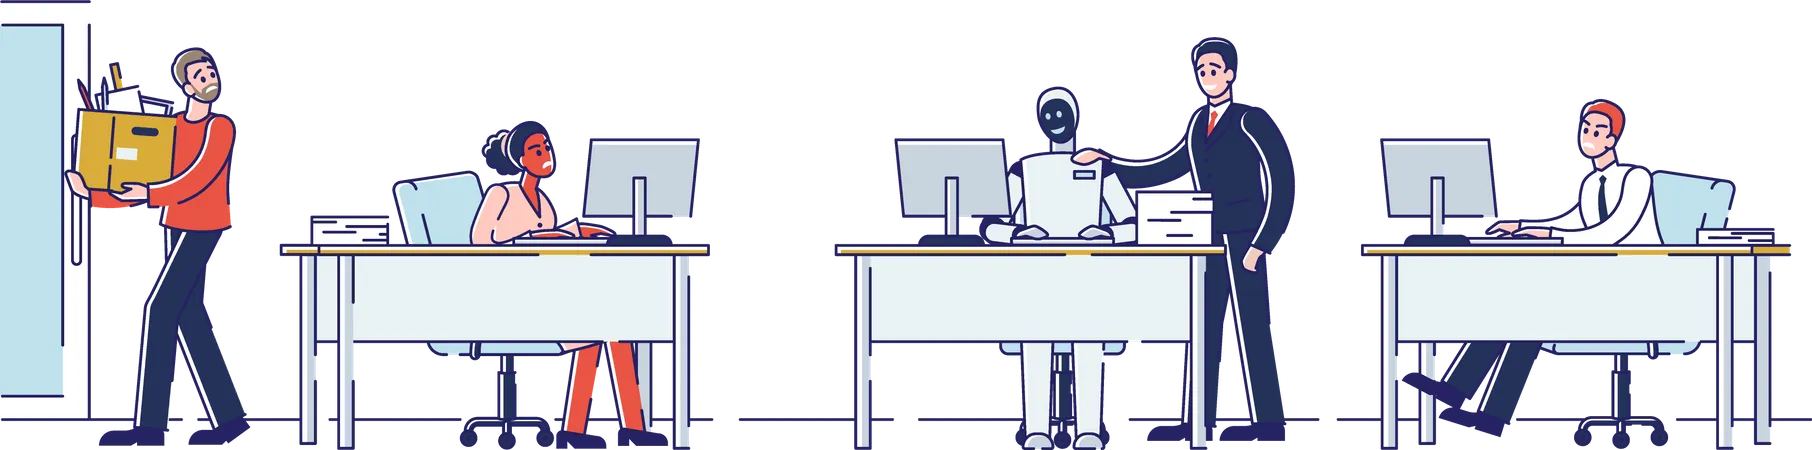 Les gens travaillent avec un robot au bureau  Illustration